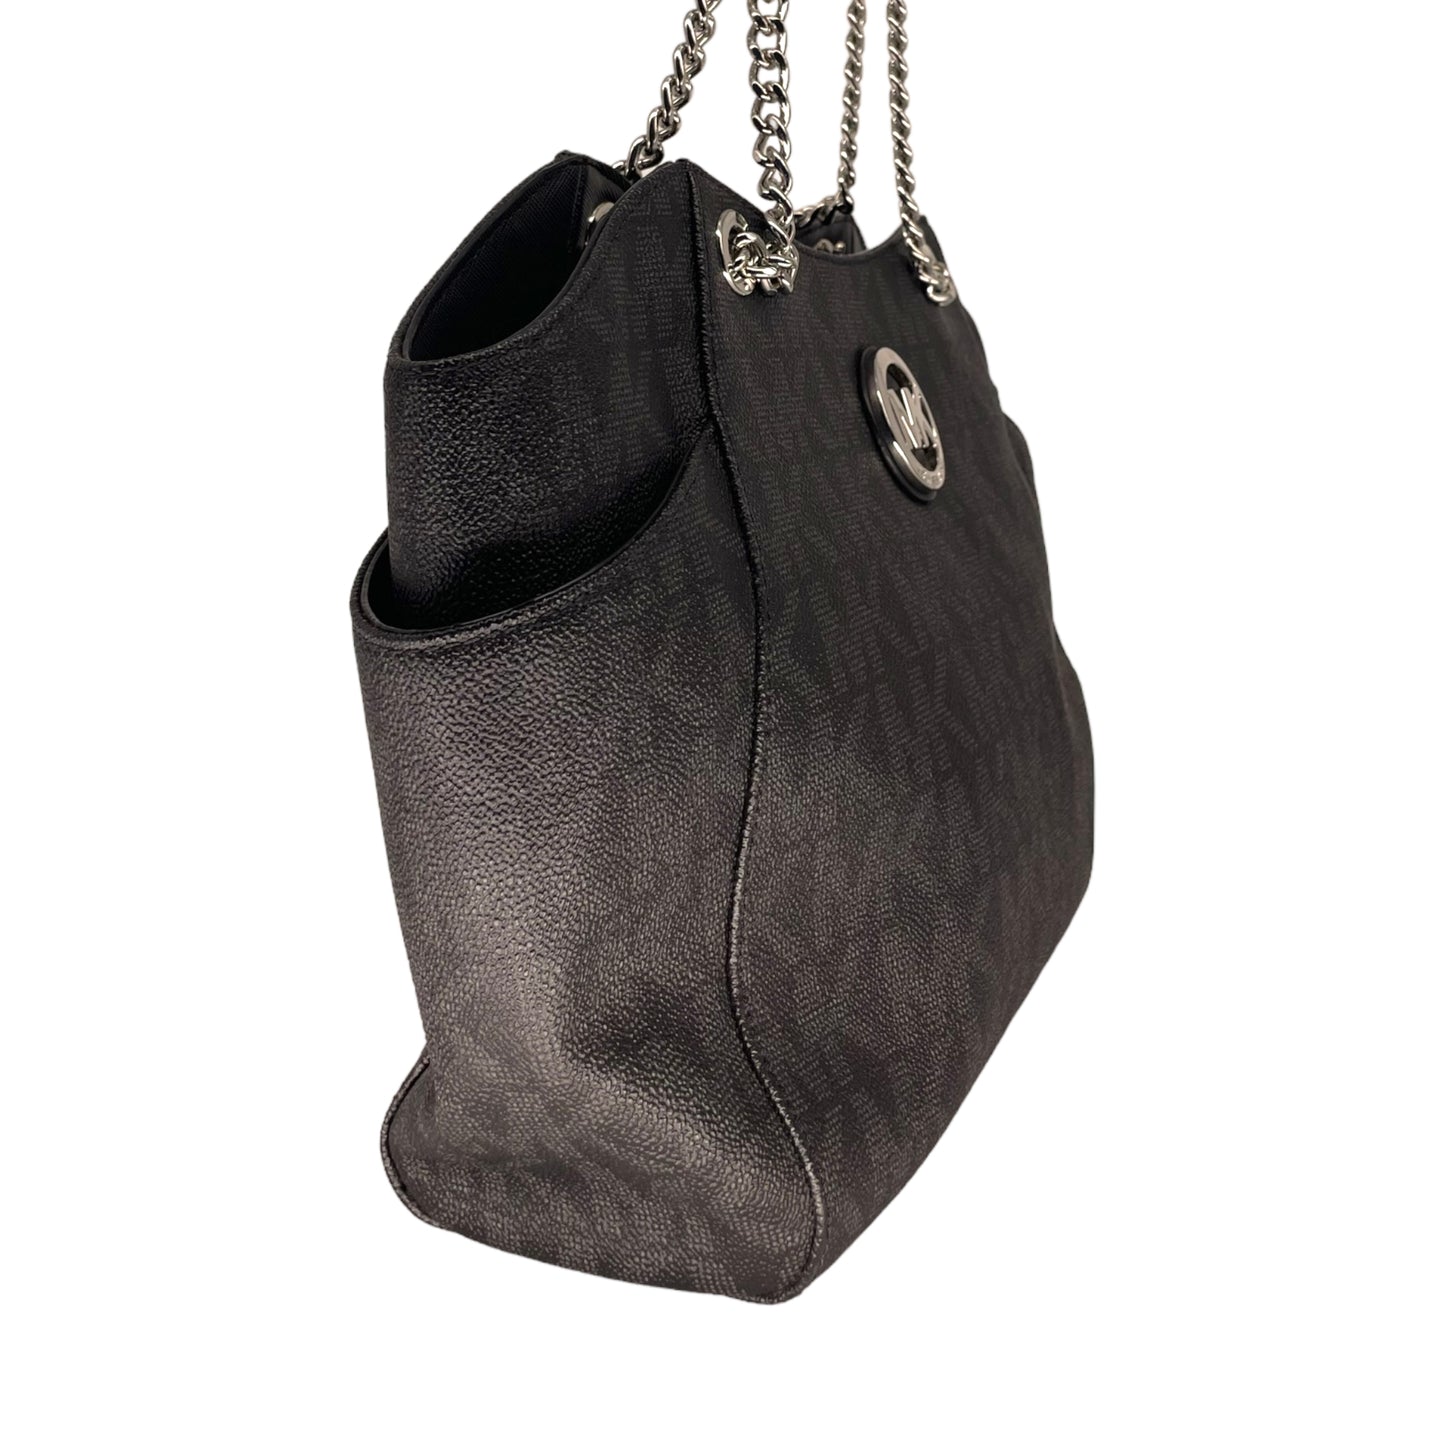 Michael Kors Jet Travel Large Chain Shoulder Tote Bag